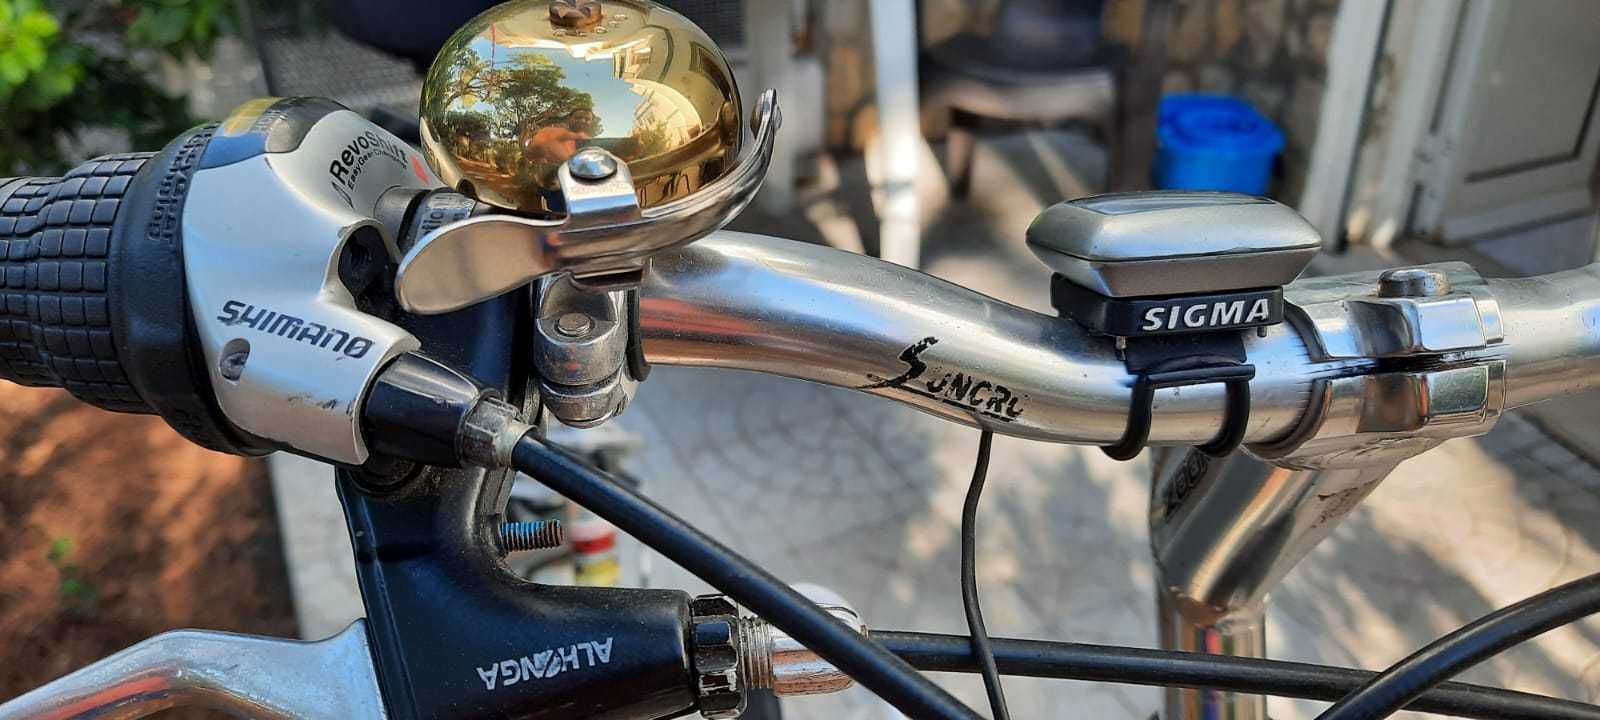 Bicicleta Monty Drive Aluminio